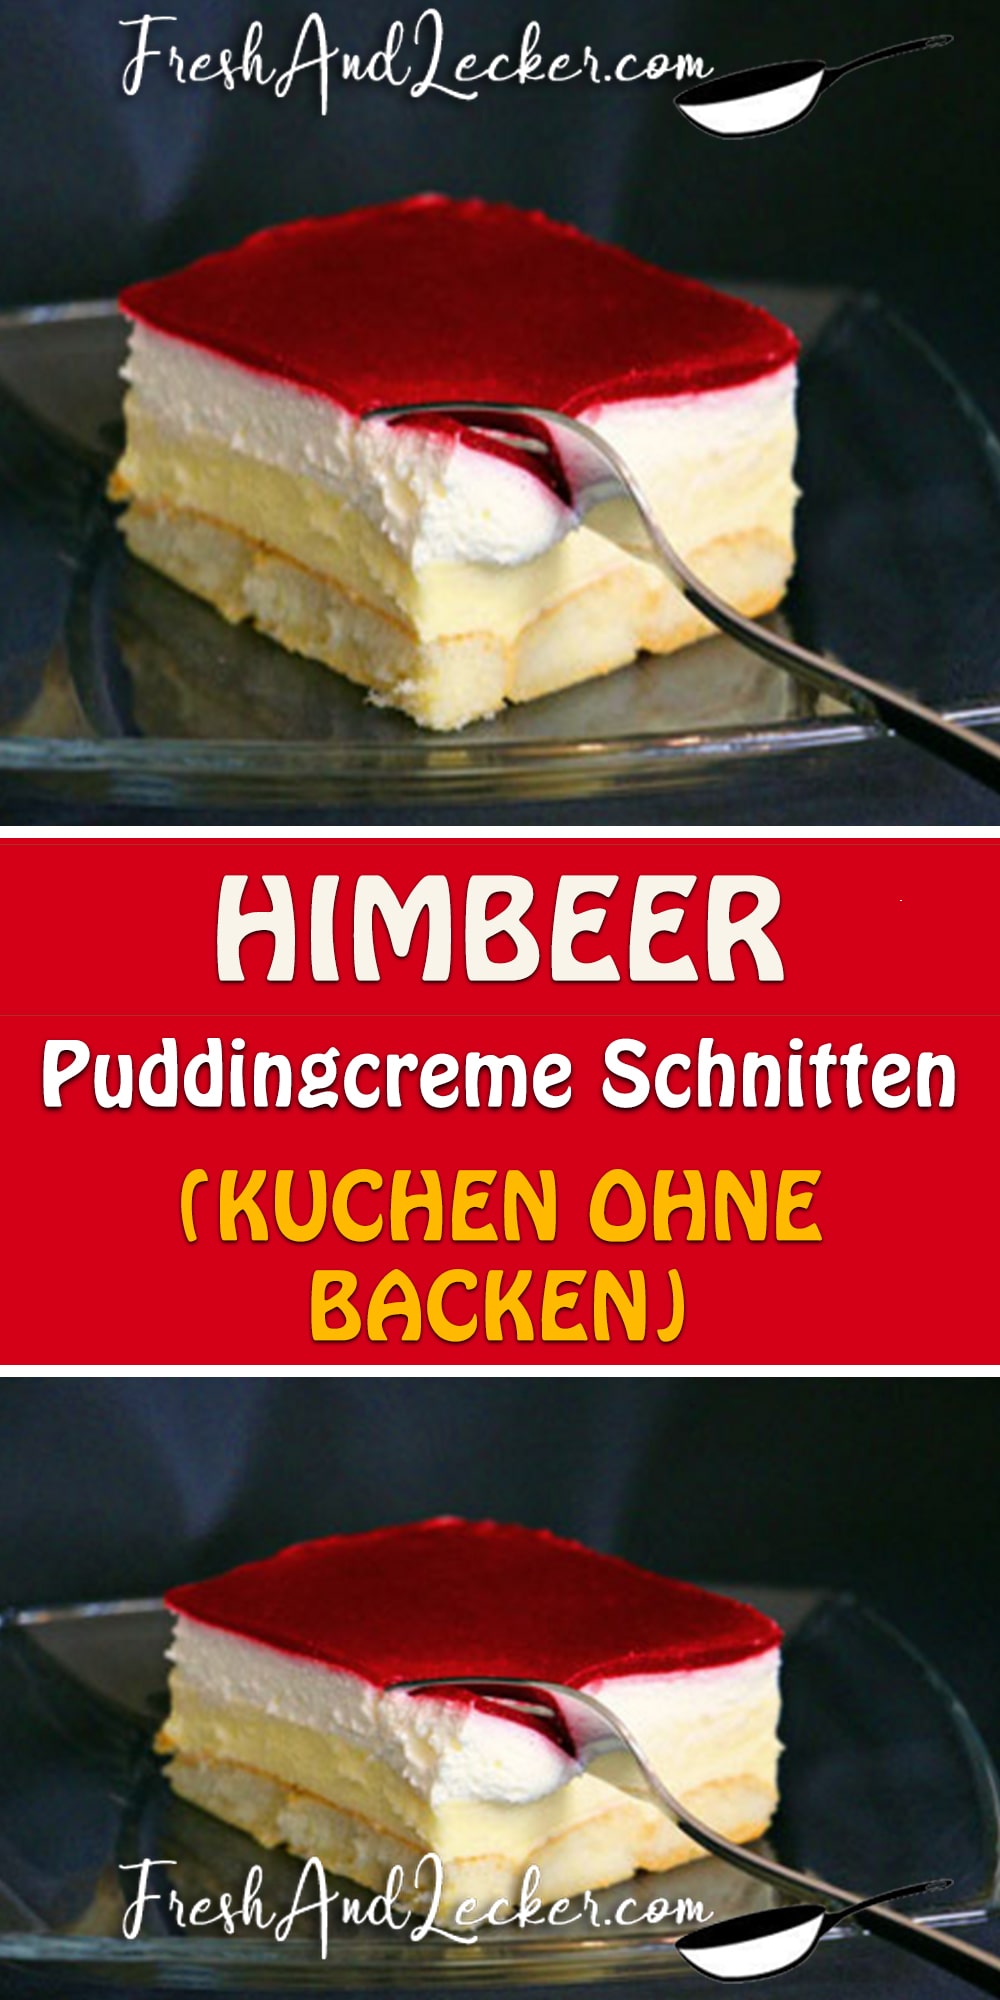 HIMBEER-PUDDINGCREME SCHNITTEN (KUCHEN OHNE BACKEN) - Fresh Lecker